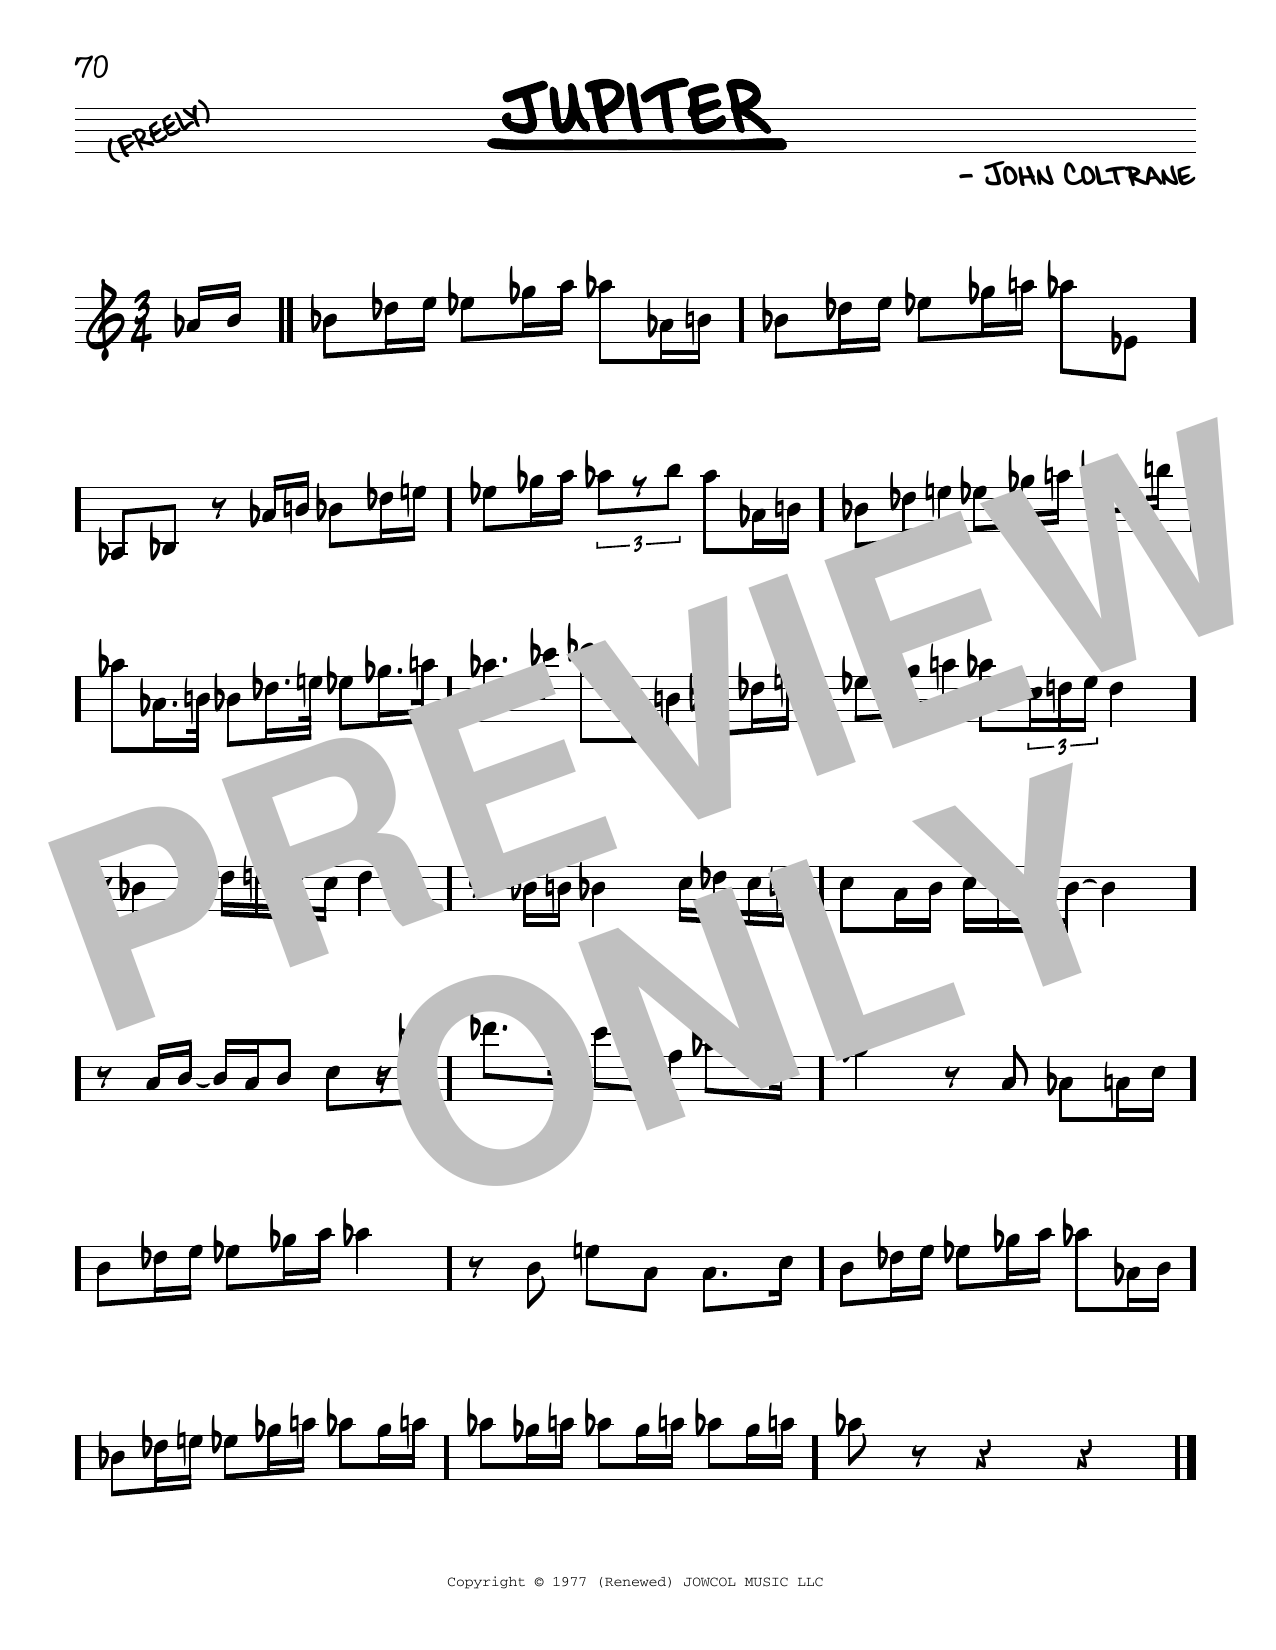 Download John Coltrane Jupiter Sheet Music